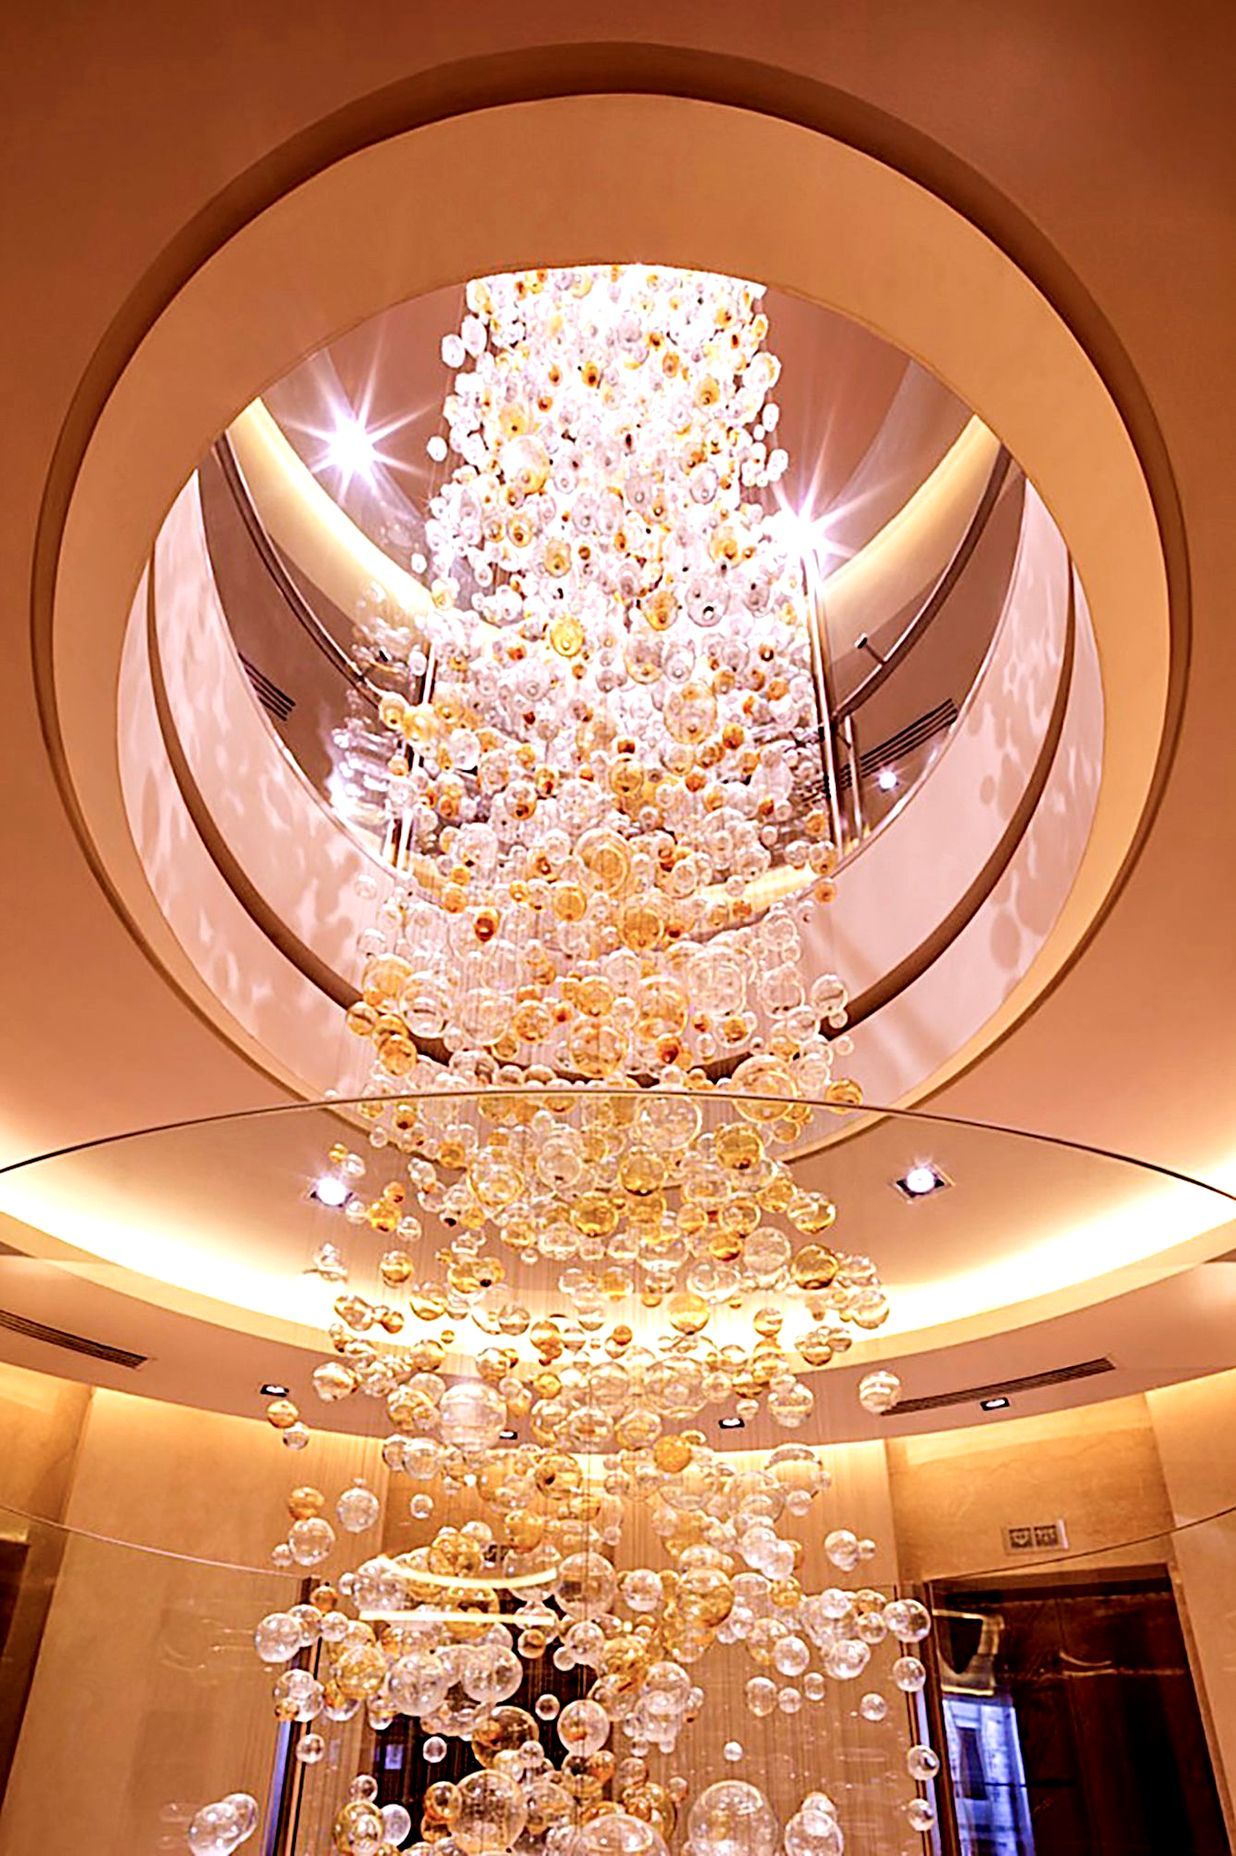  Lift LobbyCustom Lighting Feature Spanning 3-Floors 